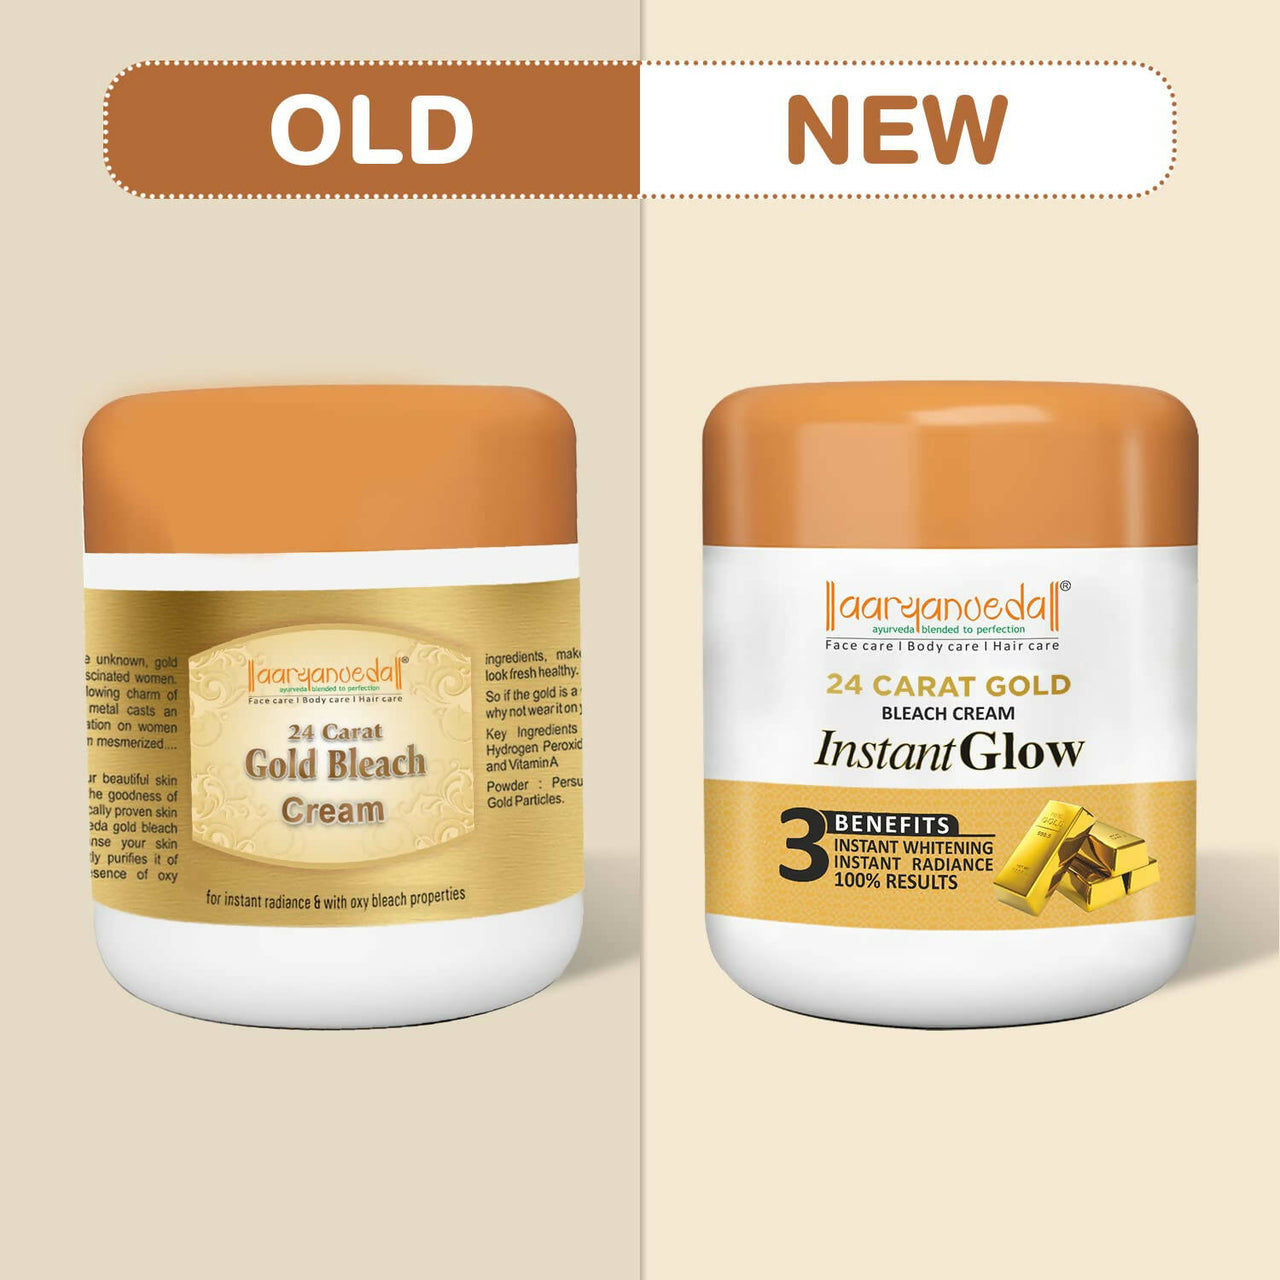 Aaryanveda 24 Carat Gold Bleach Cream - Distacart